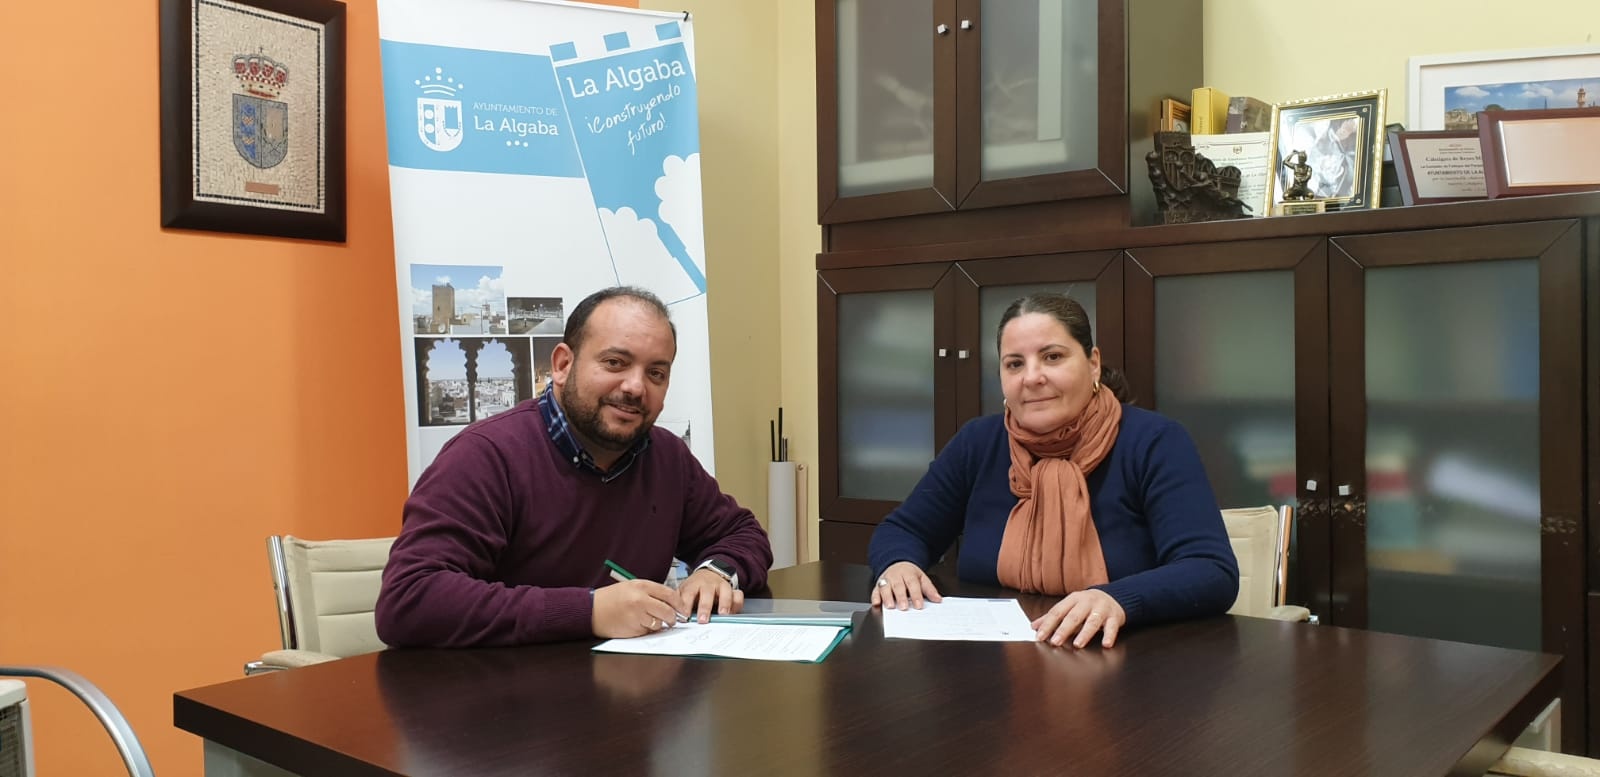 Alcalde, Diego Manuel Agüera Piñero y concejala de Medio Ambiente, Eva Mª de la Bastida Merino, firmando el convenio de colaboración